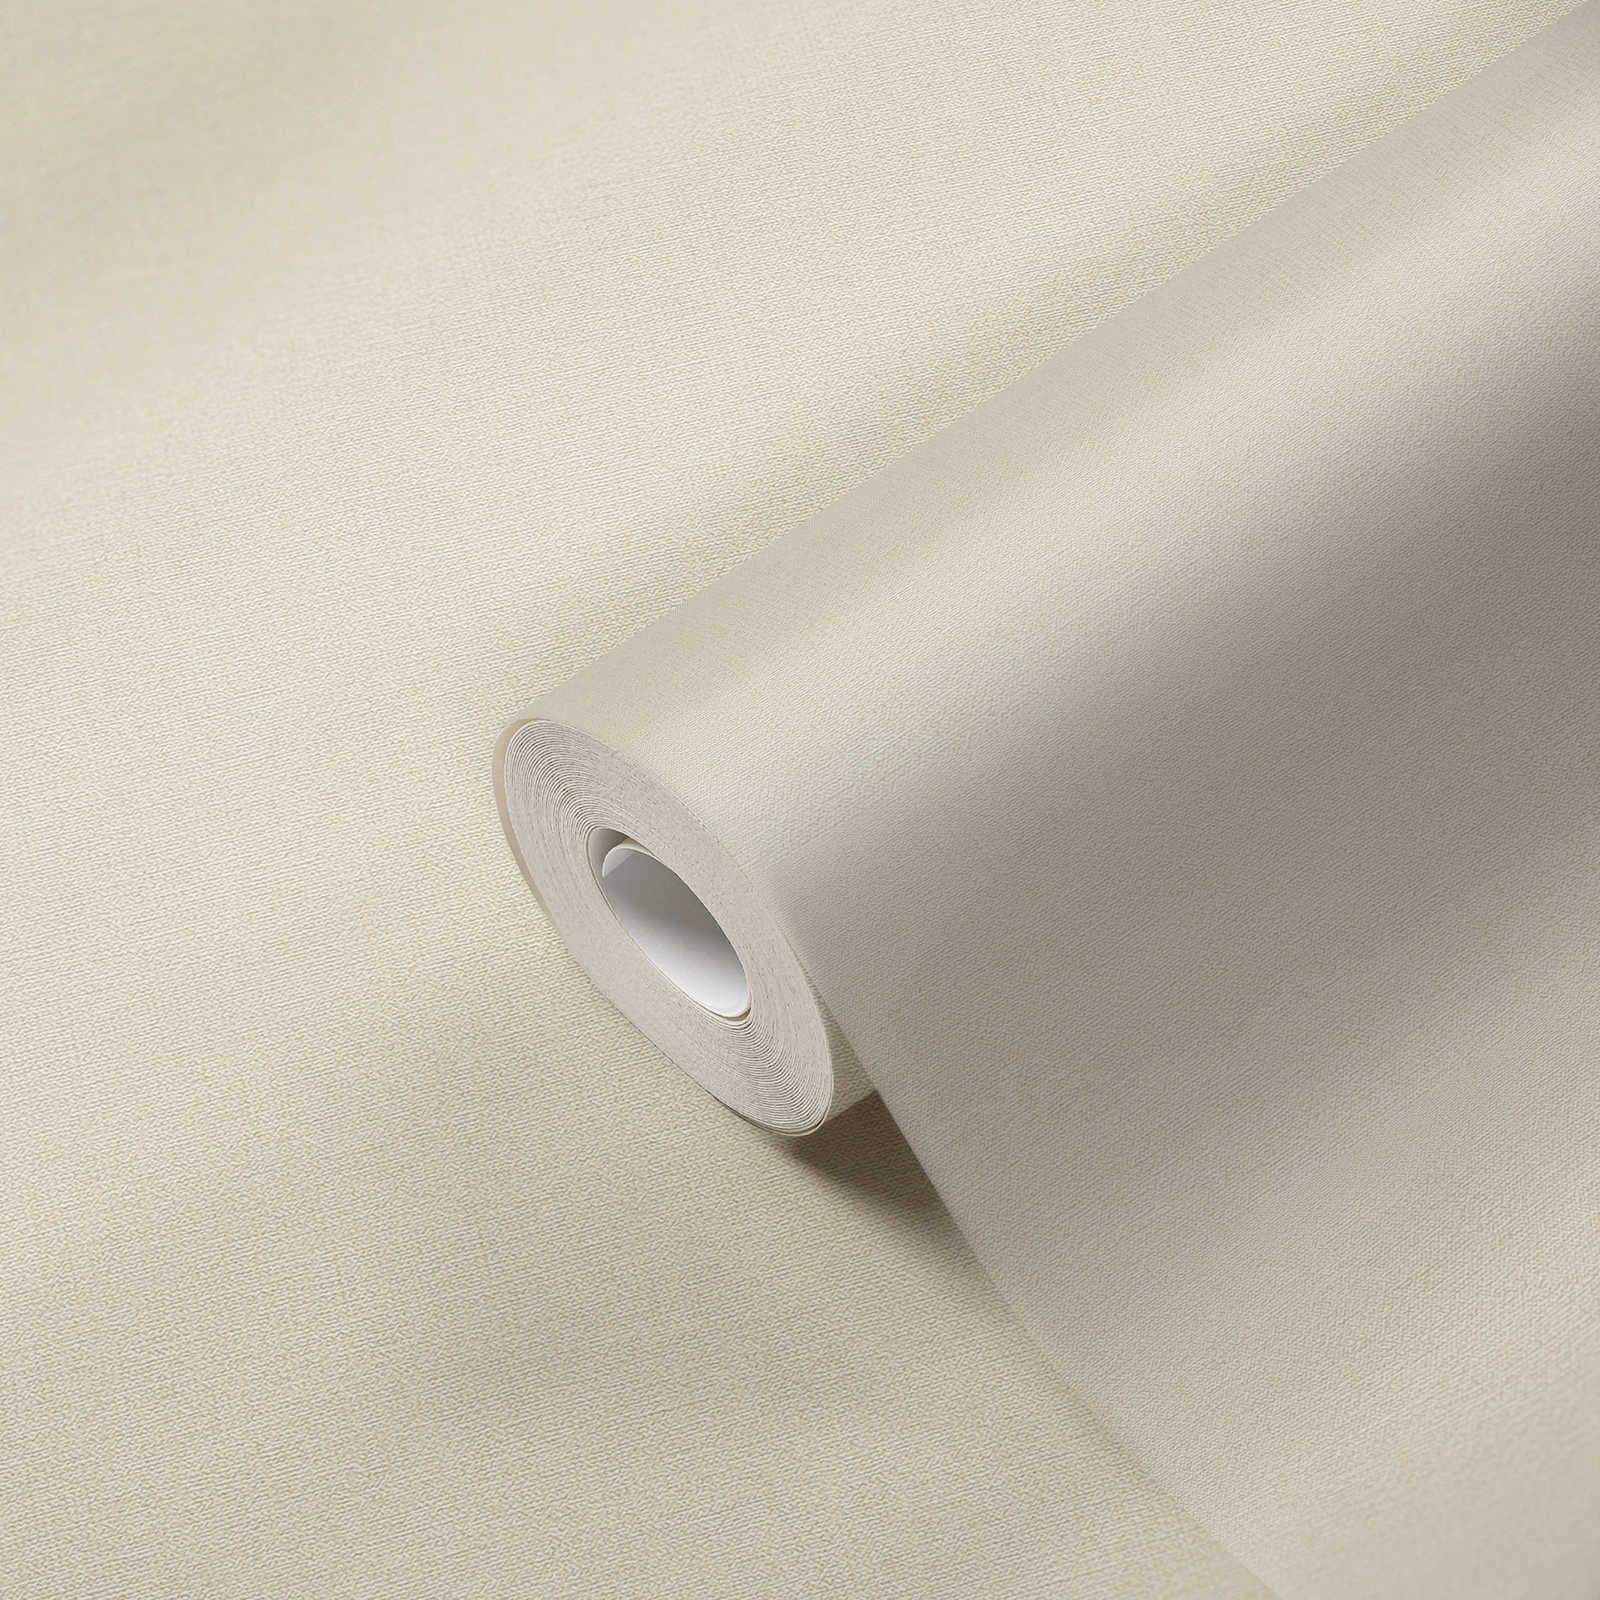             Papier peint uni sans PVC, aspect lin - beige, blanc
        